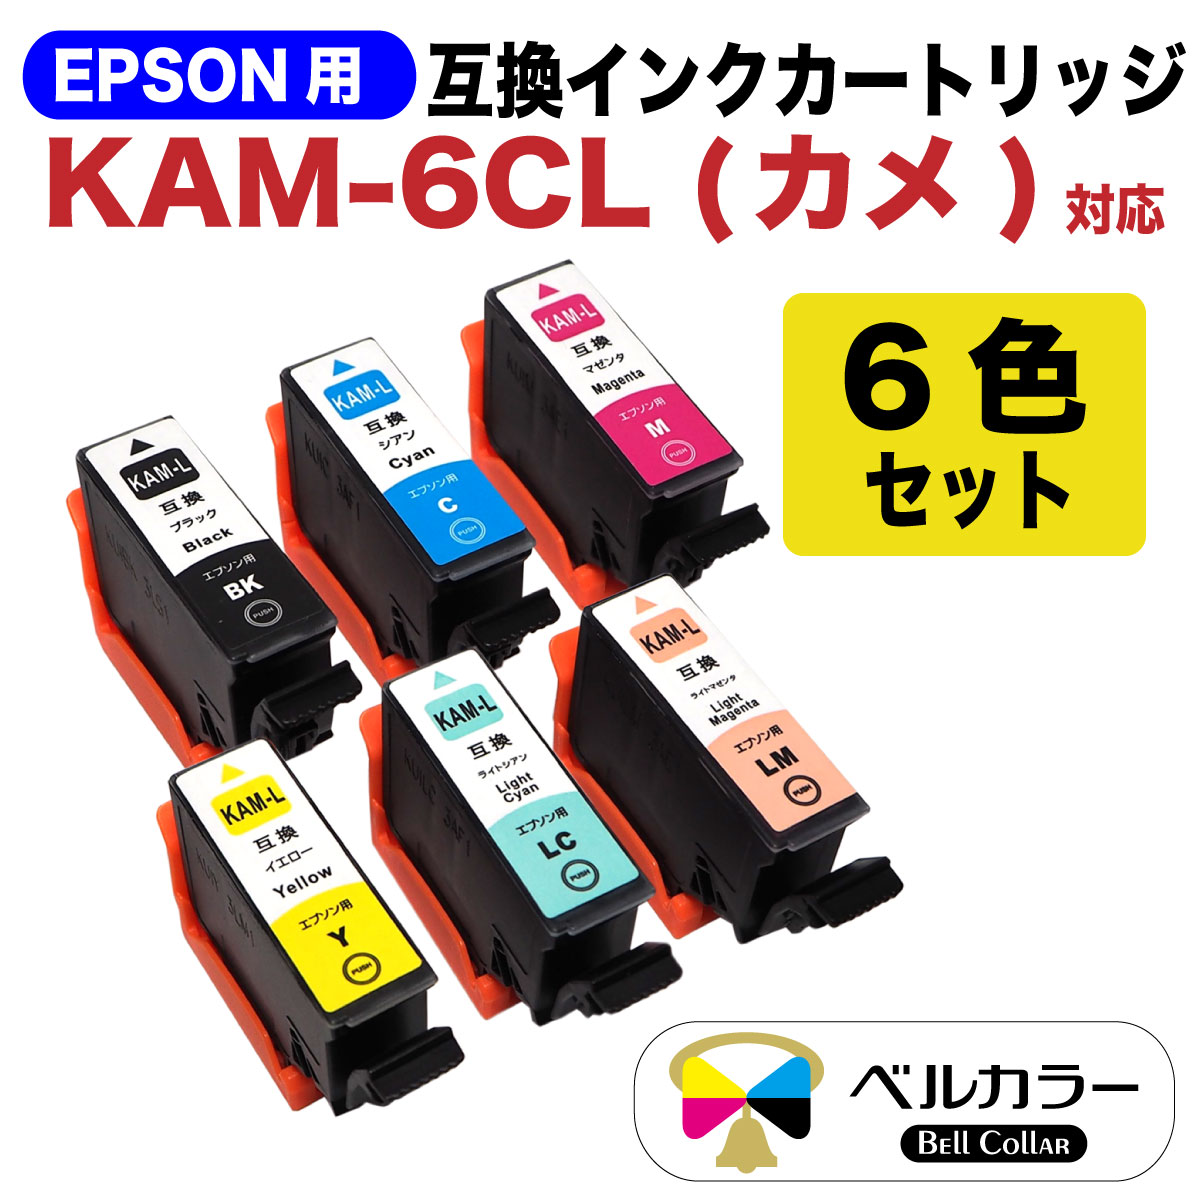 楽天市場 ポイント10倍お買い物マラソン プリンターインク 3年保証 エプソン 互換 Kam 6cl L カメ Ep 1ab Ep 1an Ep 1ar Ep 1aw Ep 8aw Ep 8ab Ep 8ar Ep 8aw Ep 8ab Ep 8ar 対応 互換 インクカートリッジ 6色セット ベル